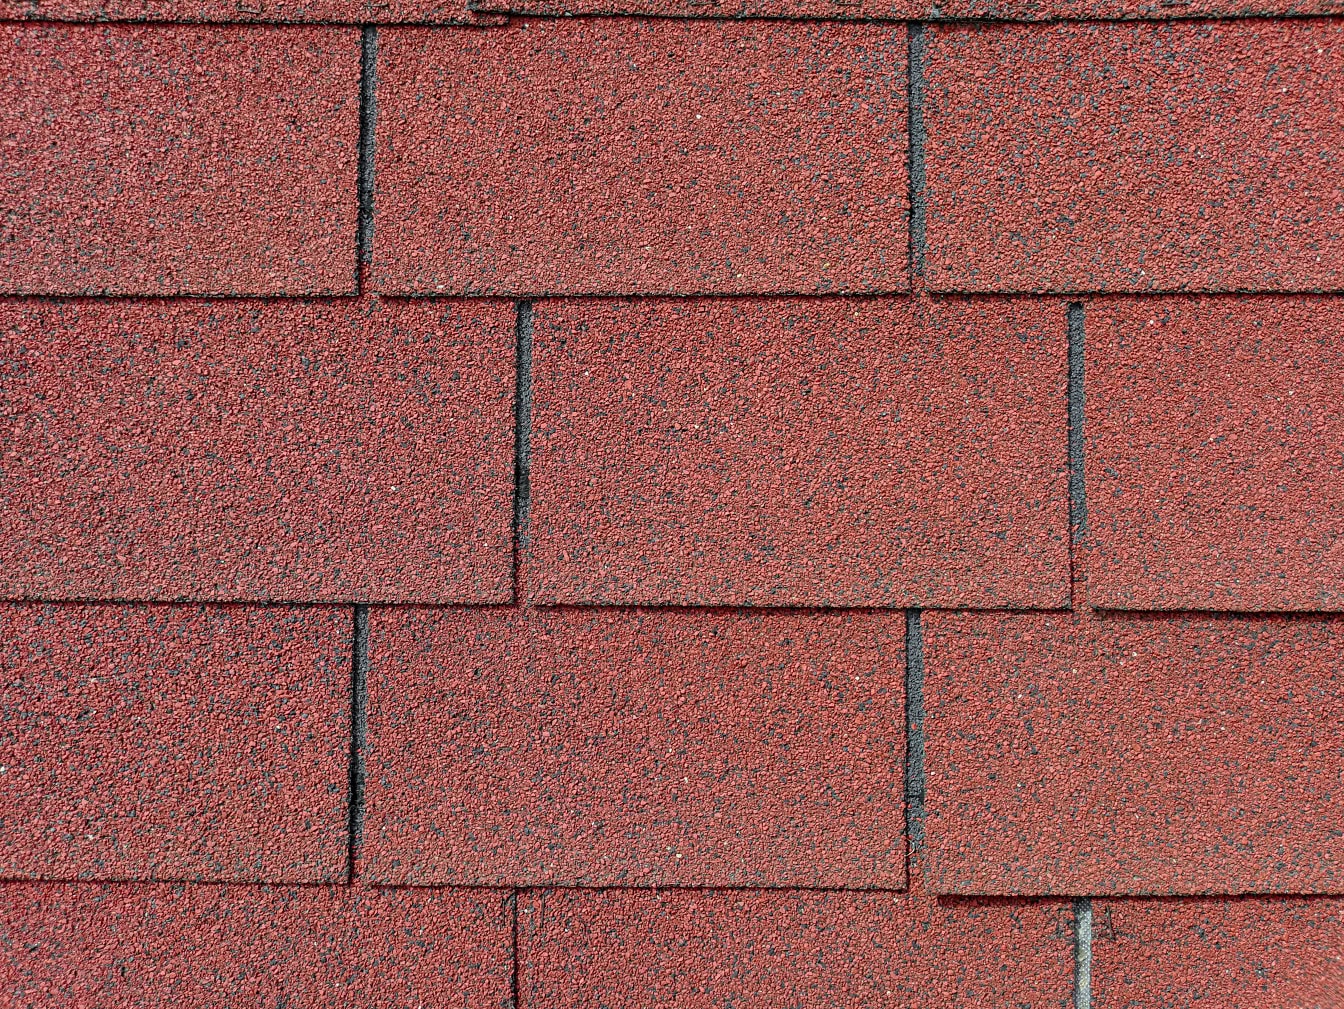 Textura tmavě červenohnědé šindelové střechy obdélníkového tvaru ze směsi bitumenu, gumy a recyklovaného plastu